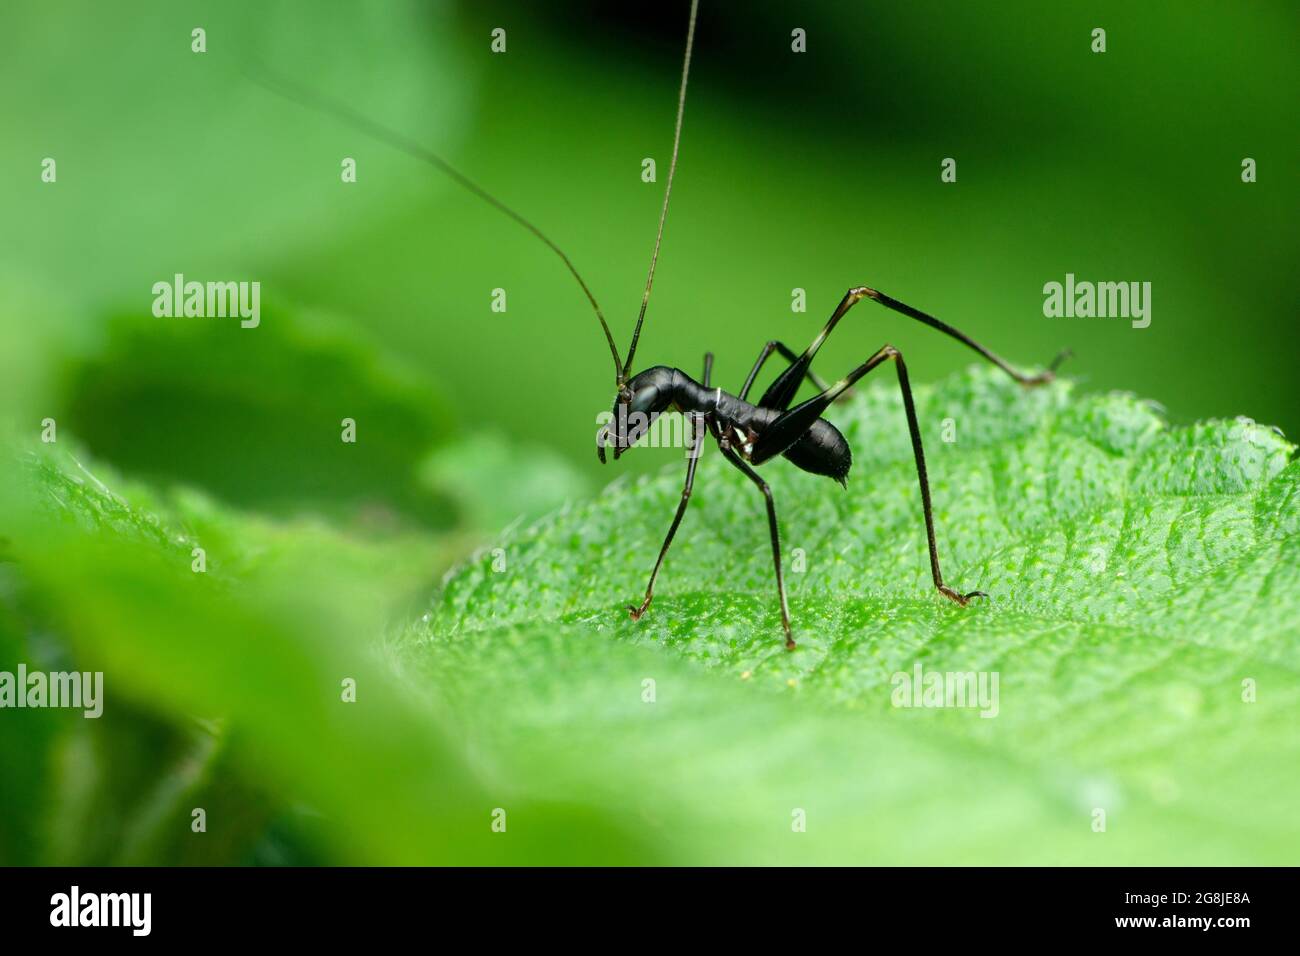 Ameise, die Cricket-Insekt imitiert, Macroxiphus-Arten, Satara, Maharashtra, Indien Stockfoto